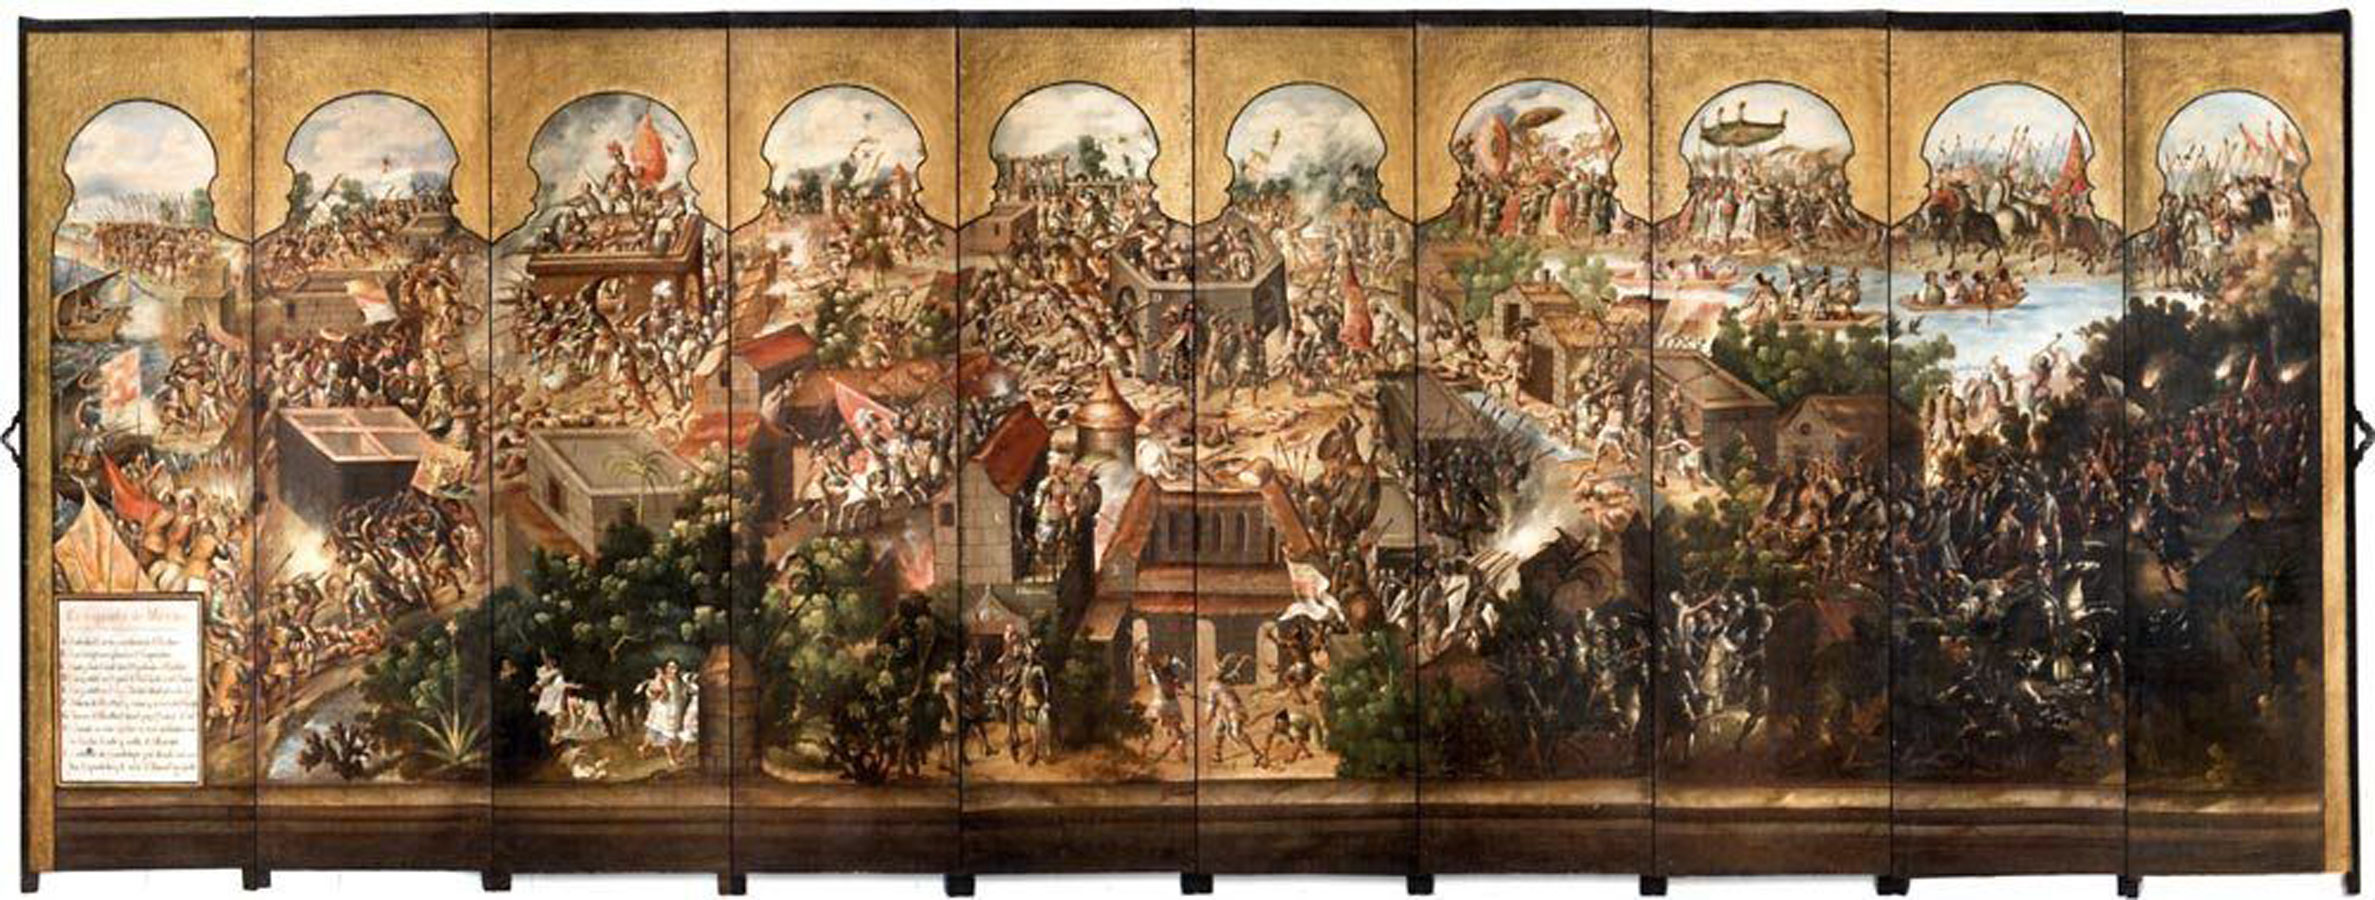 Biombo con la historia de la conquista de México, Anónimo, Siglo XVII